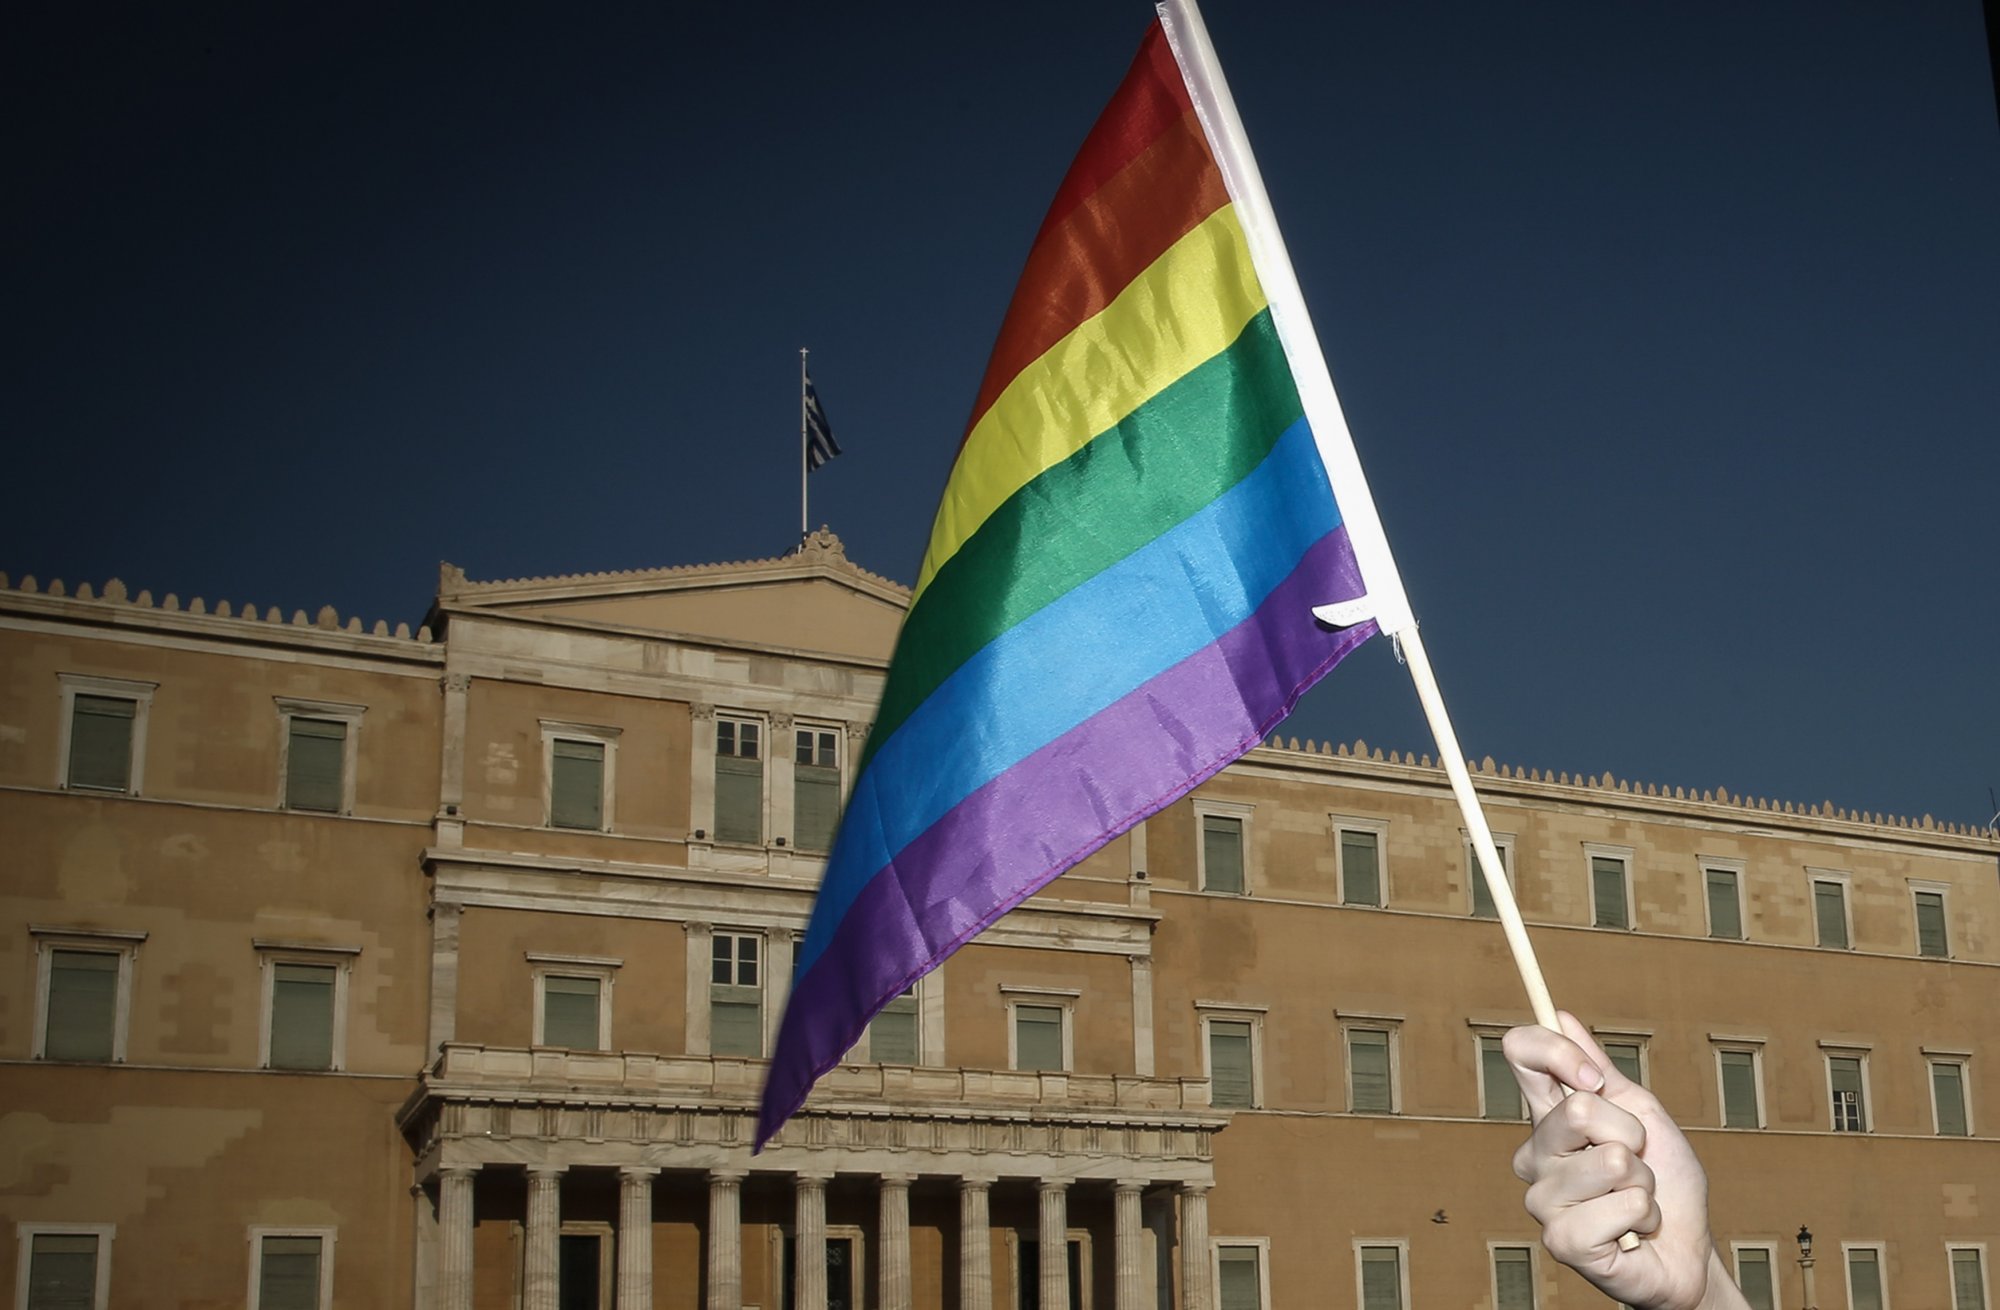 Κατατίθεται στη Βουλή το νομοσχέδιο για τα ομόφυλα ζευγάρια - Ψηφίζεται στις 15 Φεβρουαρίου